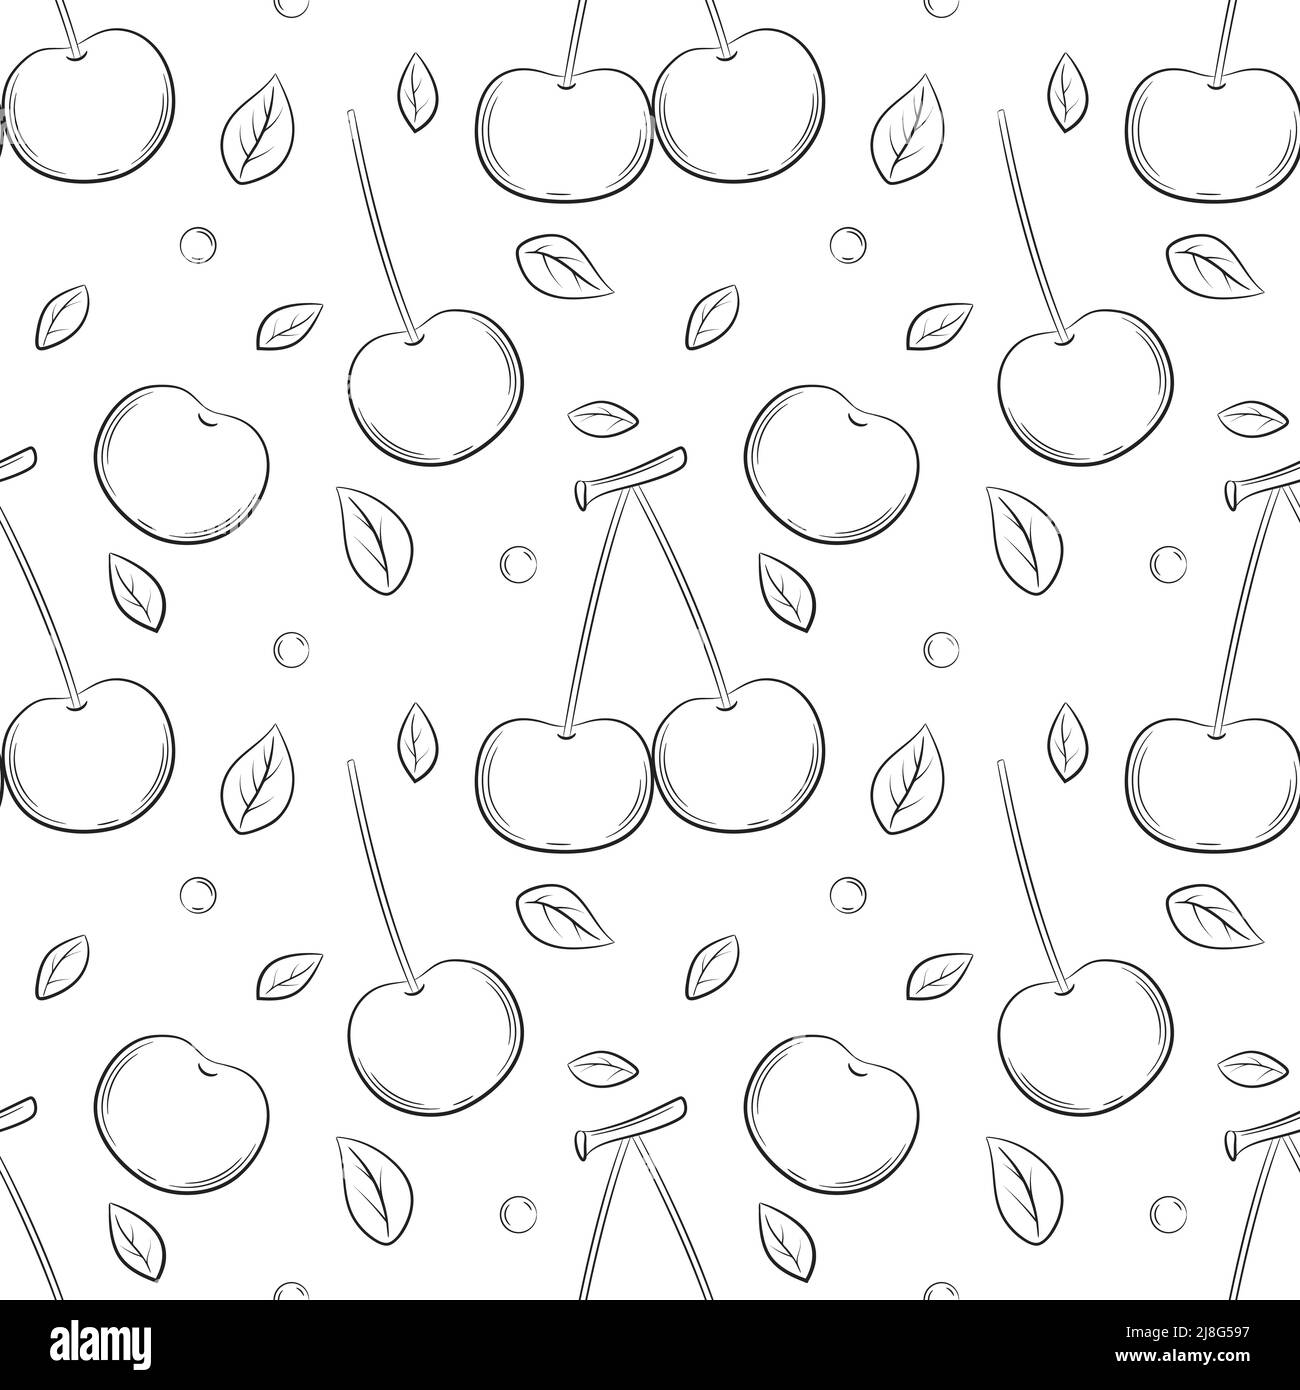 Einfarbiger, nahtloser Fruchtansatz in Schwarz und Weiß. Handgezeichnete Kirschbeeren mit Blättern. Eine einfache skizzieren Hintergrund für Web-Design, Produkt-Packagin Stock Vektor